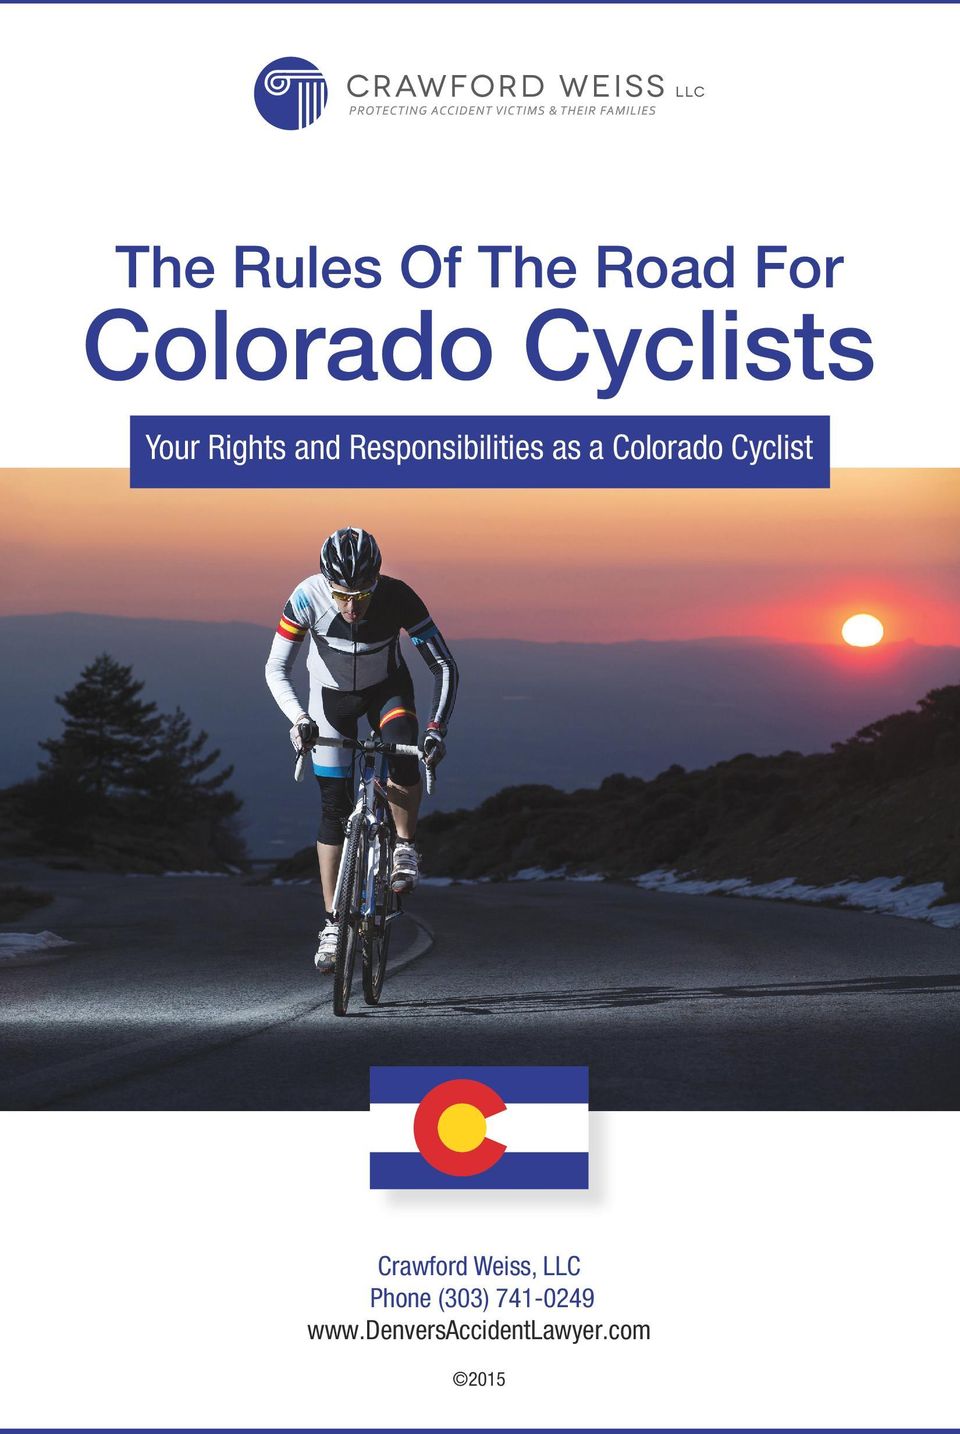 Colorado Cyclist Crawford Weiss, LLC Phone